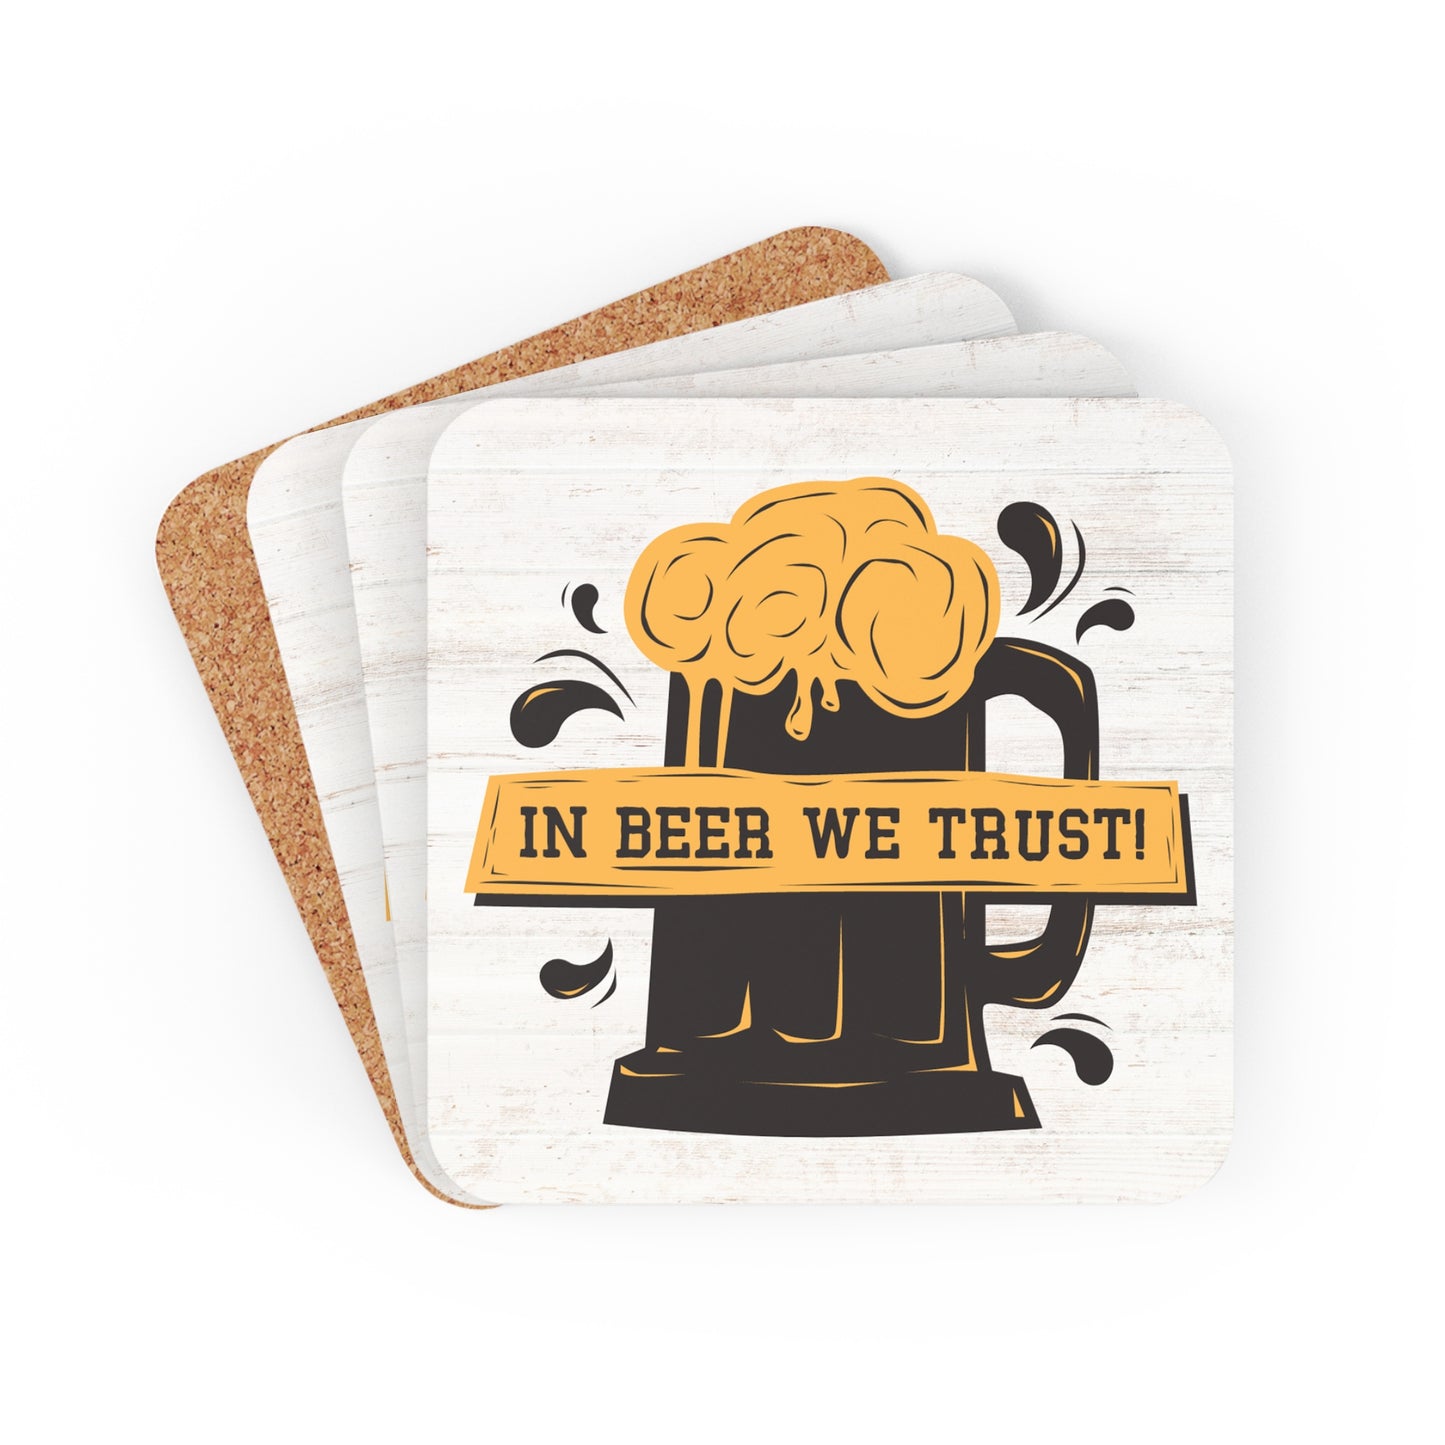 In Beer We Trust - Corkwood Coaster Set